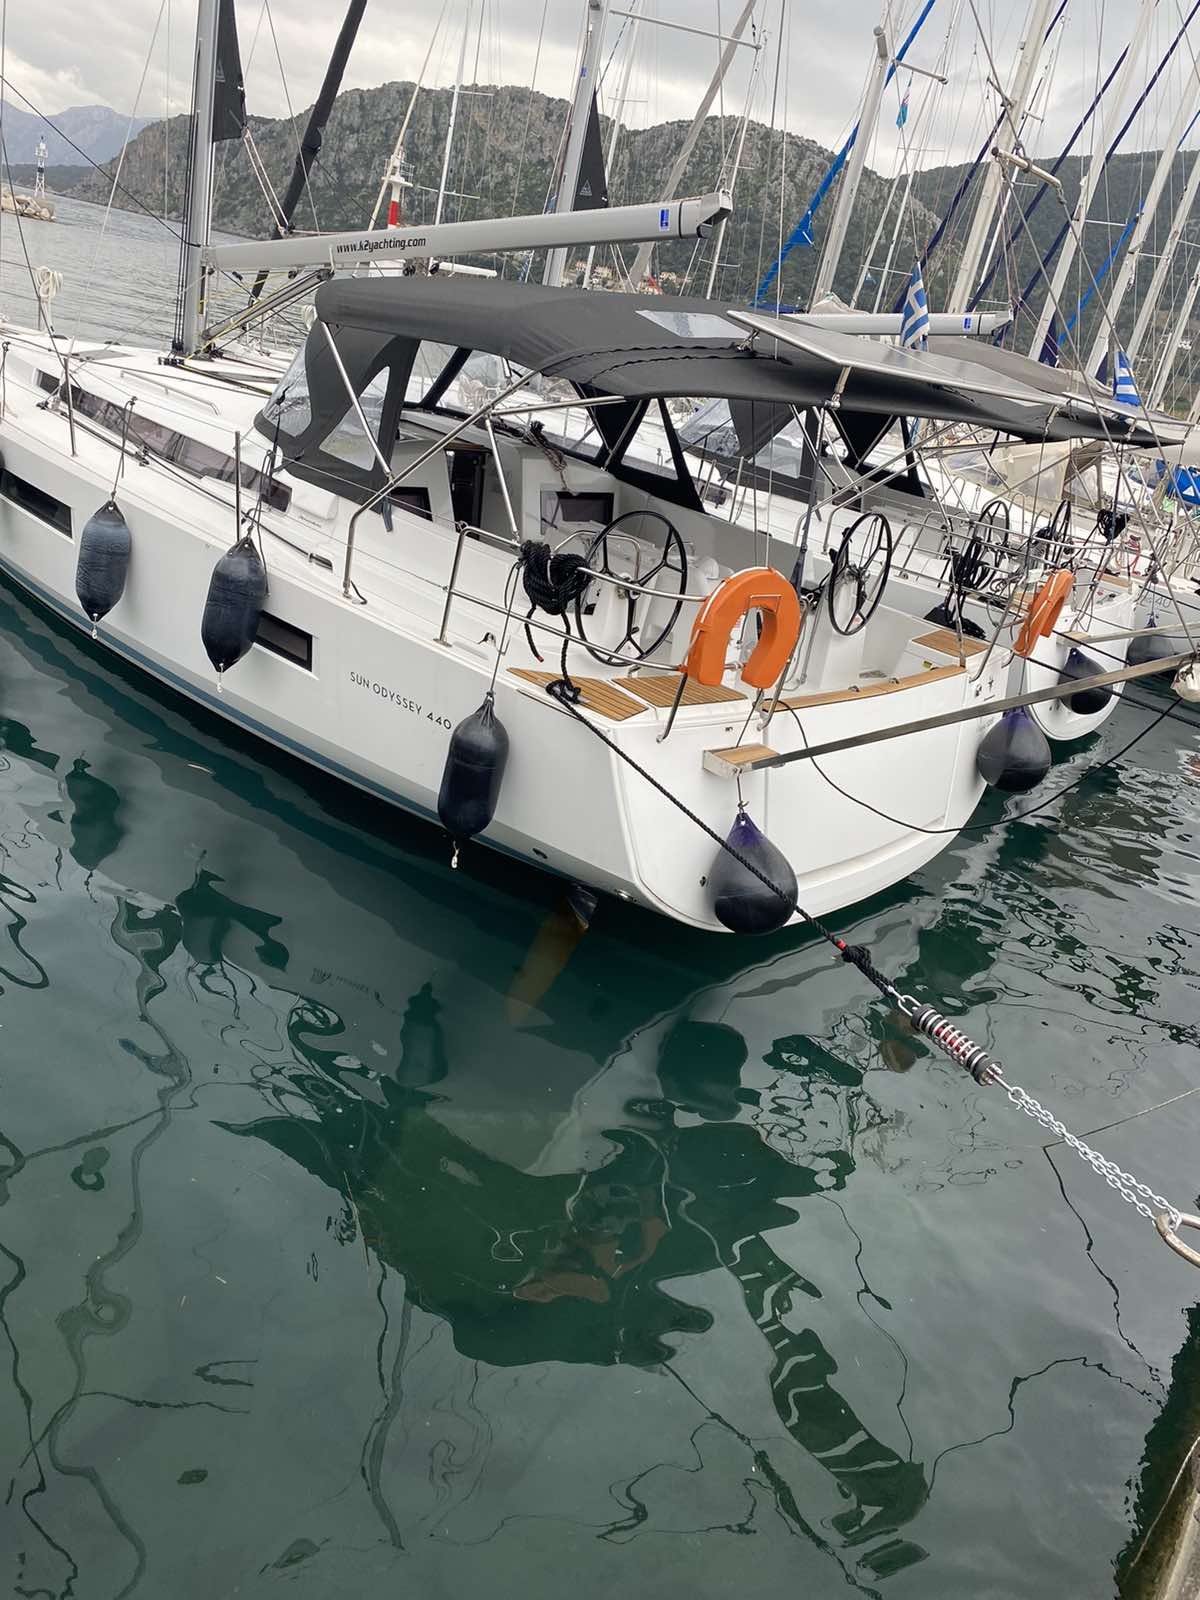 Sun Odyssey 440 - Yacht Charter Mykonos & Boat hire in Greece Cyclades Islands Mykonos Mykonos 4